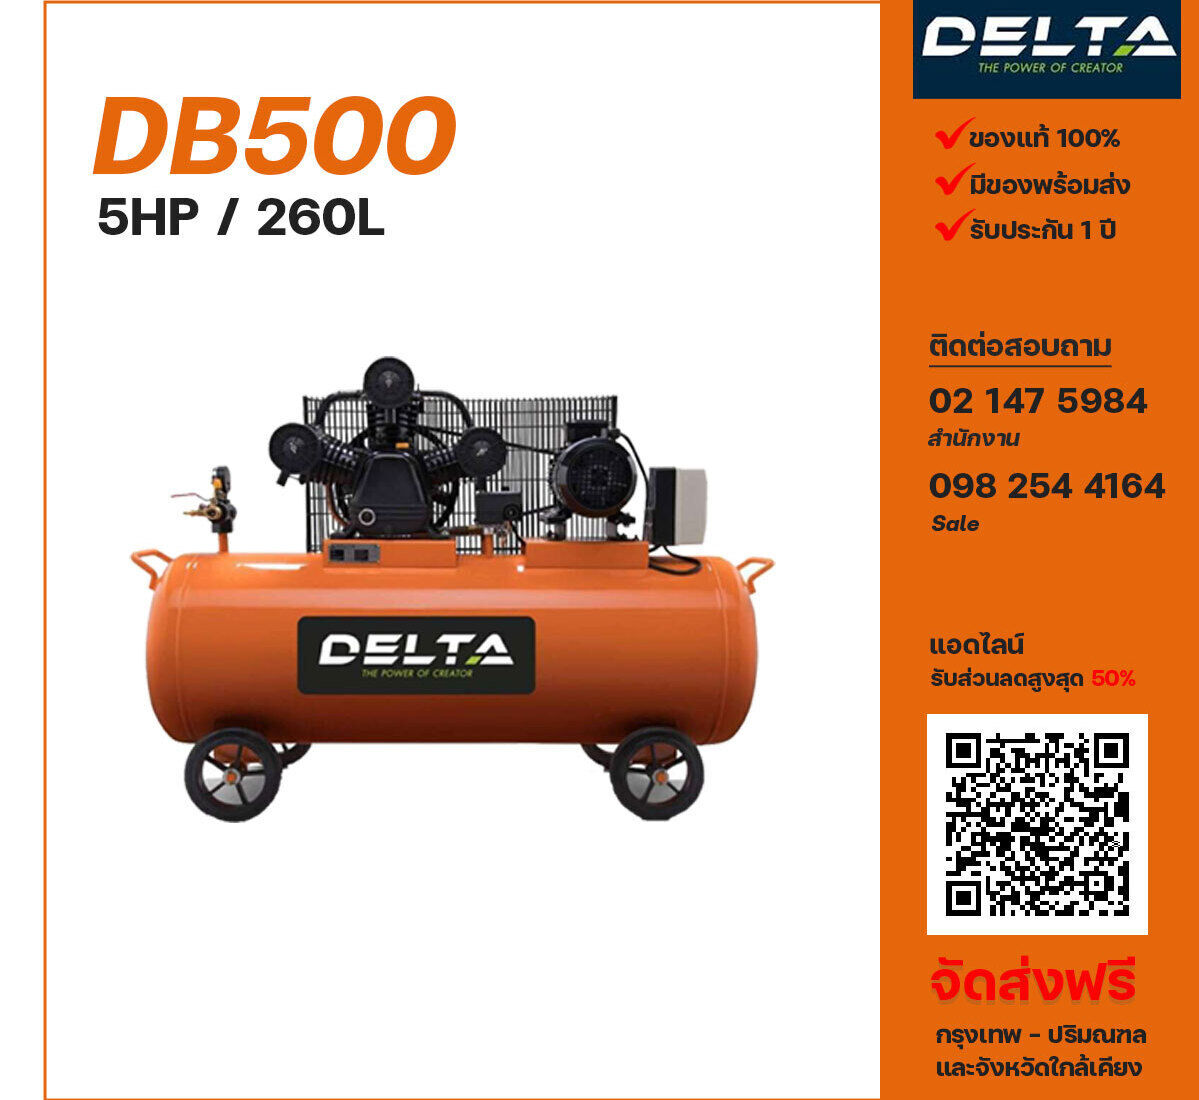 ปั๊มลมเดลต้า DELTA DB500 380V ปั๊มลมลูกสูบ ขนาด 3 สูบ 5 แรงม้า 260 ลิตร DELTA พร้อมมอเตอร์ ไฟ 380V ส่งฟรี กรุงเทพฯ-ปริมณฑล รับประกัน 1 ปี